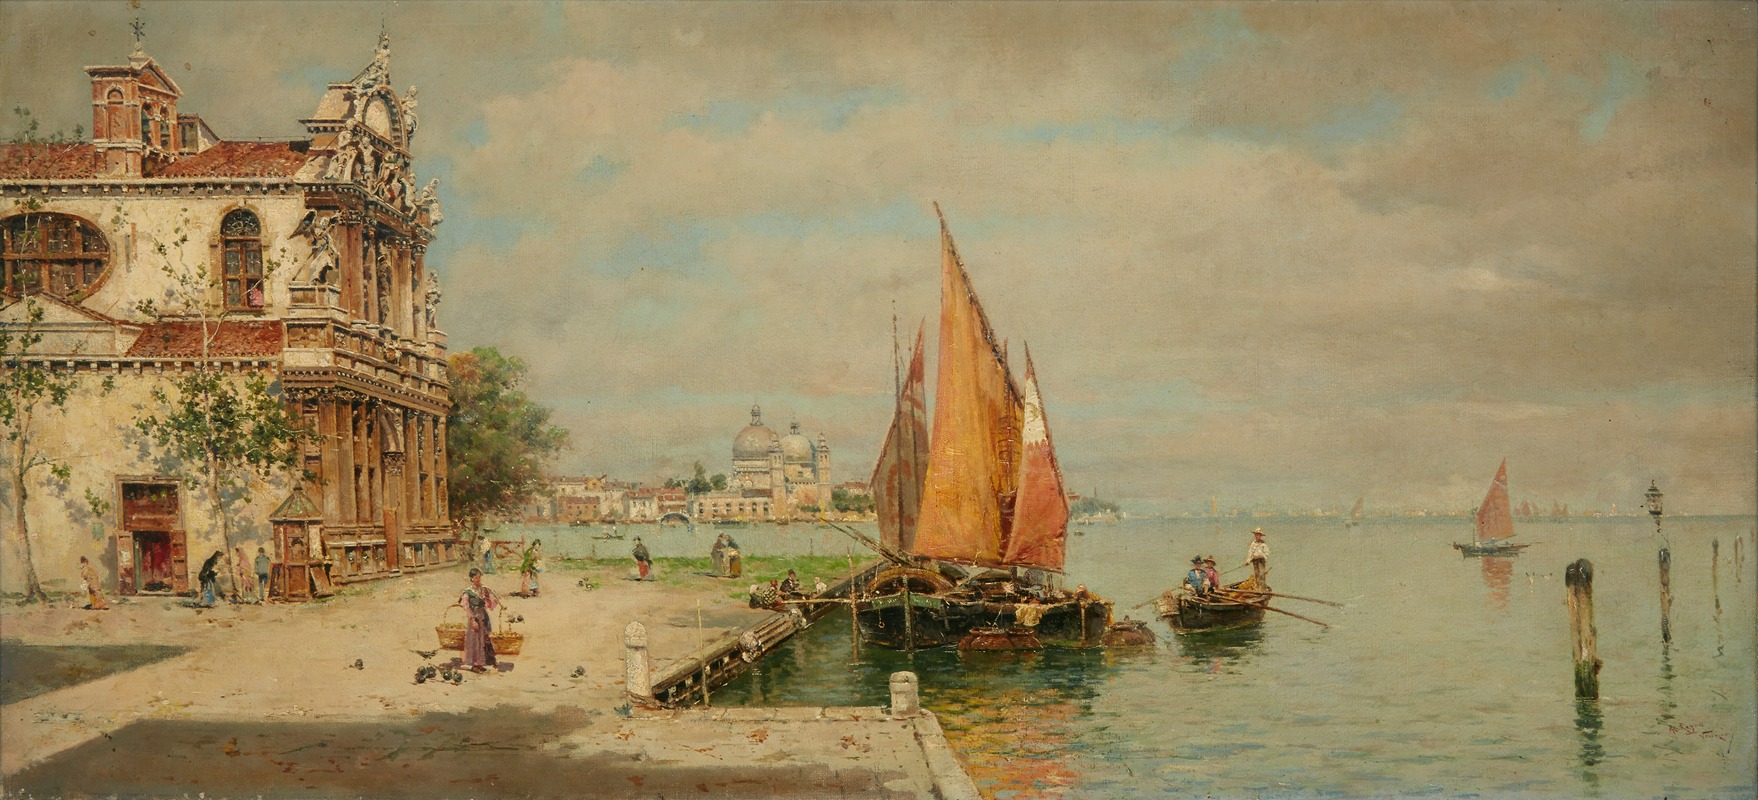 Antonio María de Reyna Manescau - A view of La Giudecca, Venice